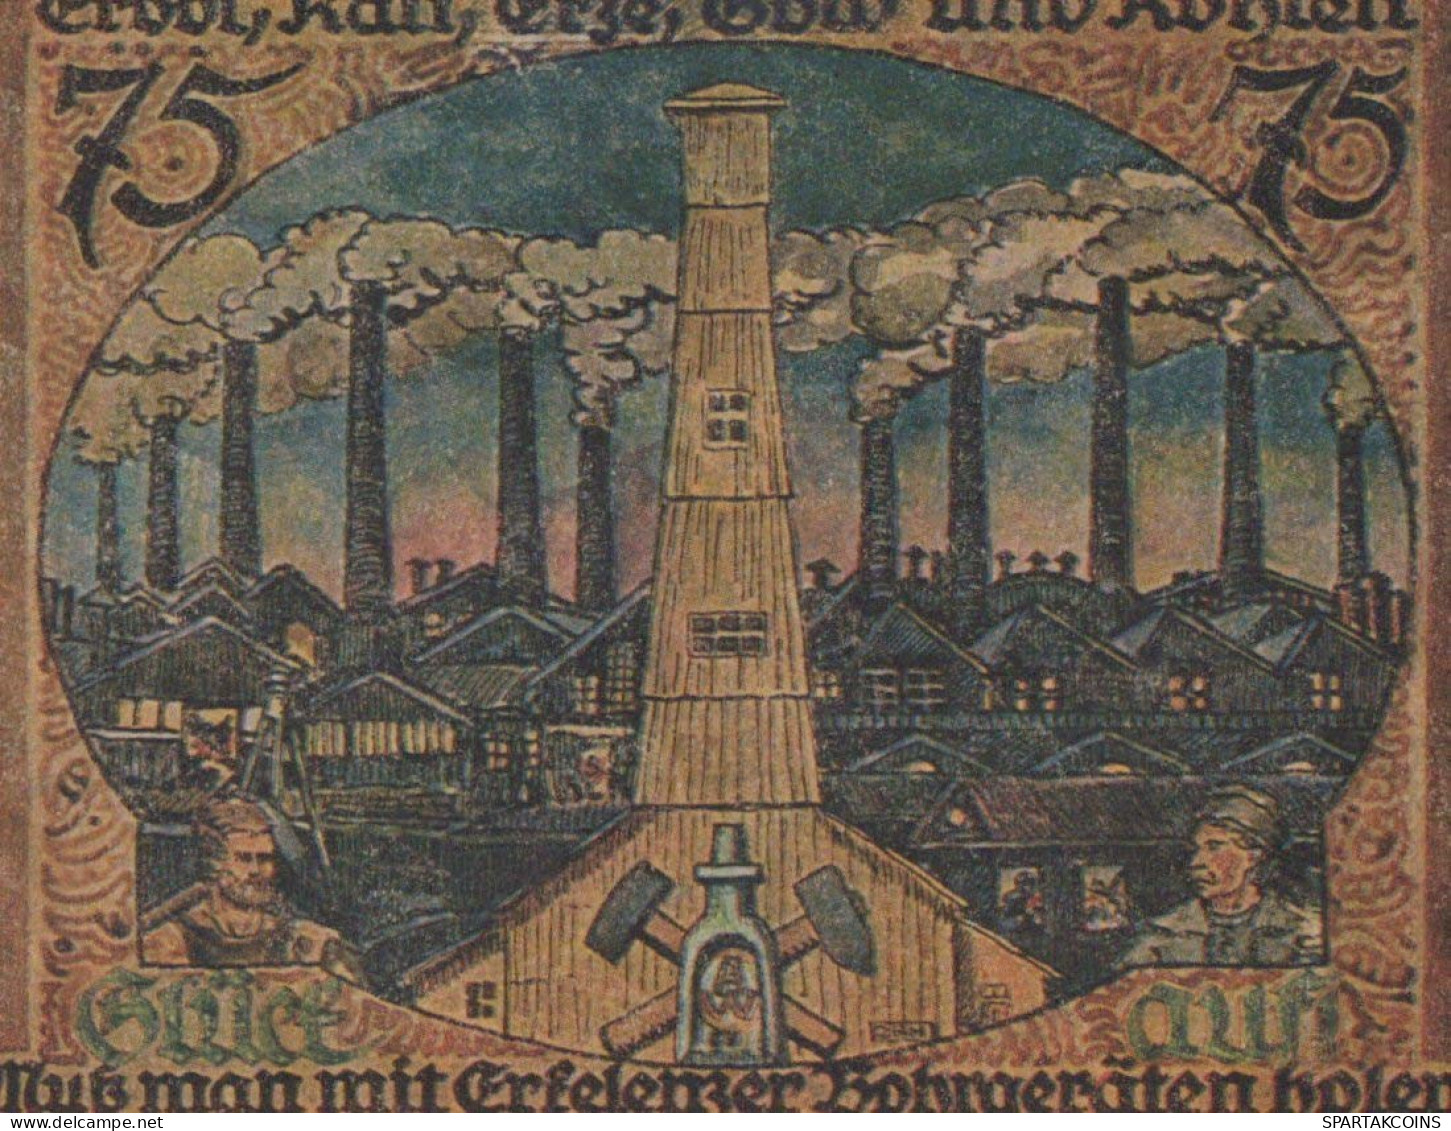 75 PFENNIG 1921 Stadt ERKELENZ Rhine UNC DEUTSCHLAND Notgeld Banknote #PB332 - [11] Emisiones Locales